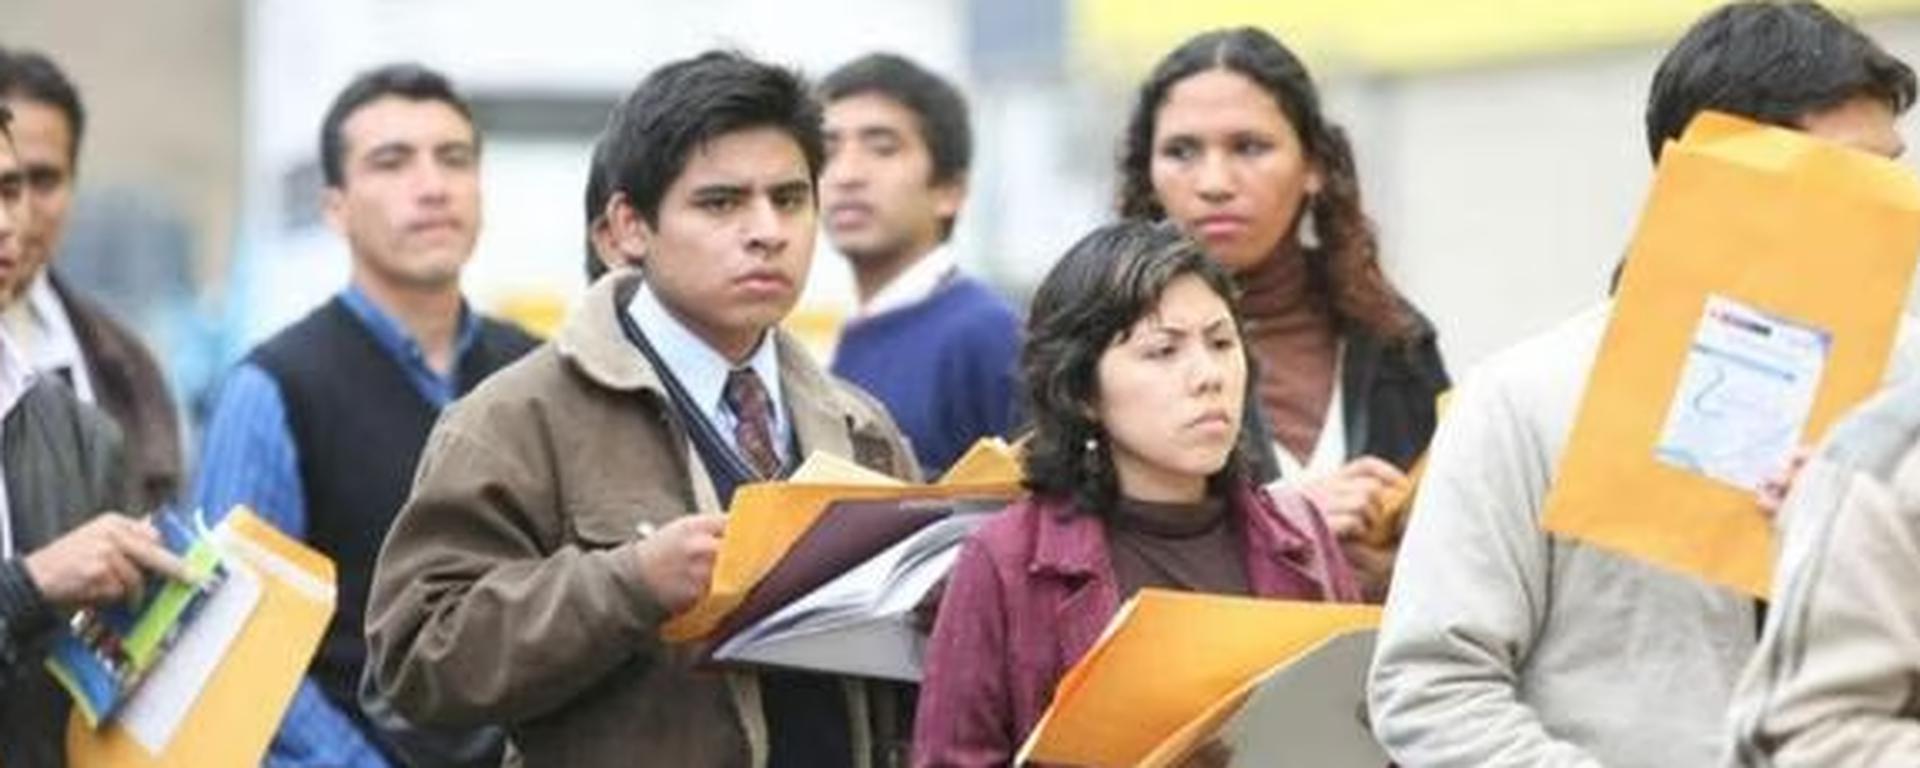 Subempleo invisible creció 13,3% en el último año: ¿por qué cada vez más peruanos no pueden costear la canasta básica?